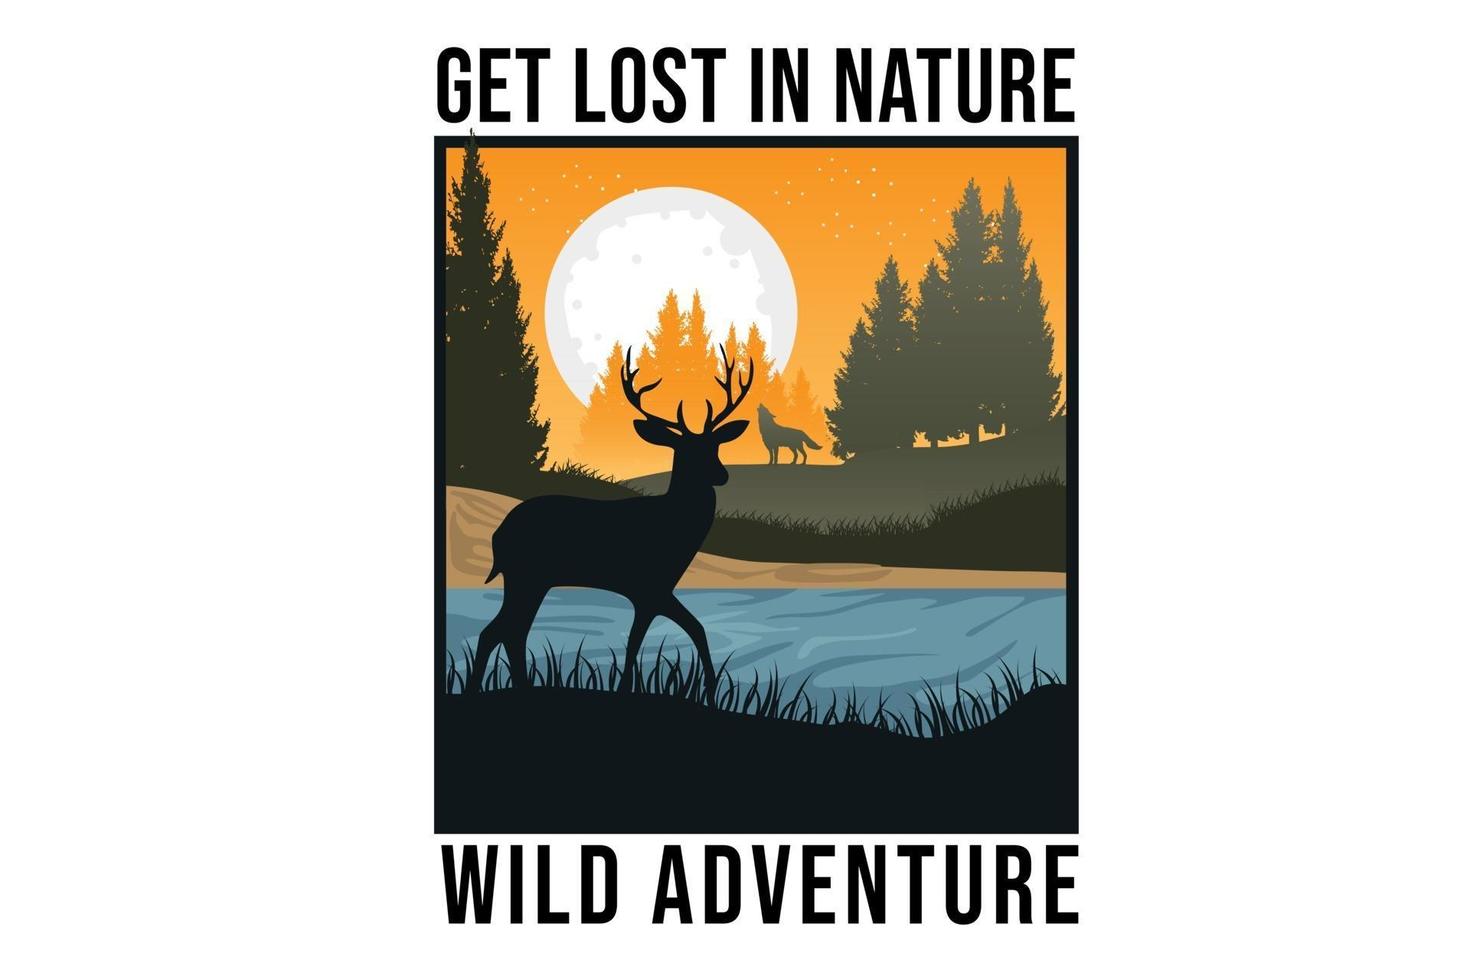 Piérdase en la naturaleza salvaje aventura, diseño de ilustraciones vector